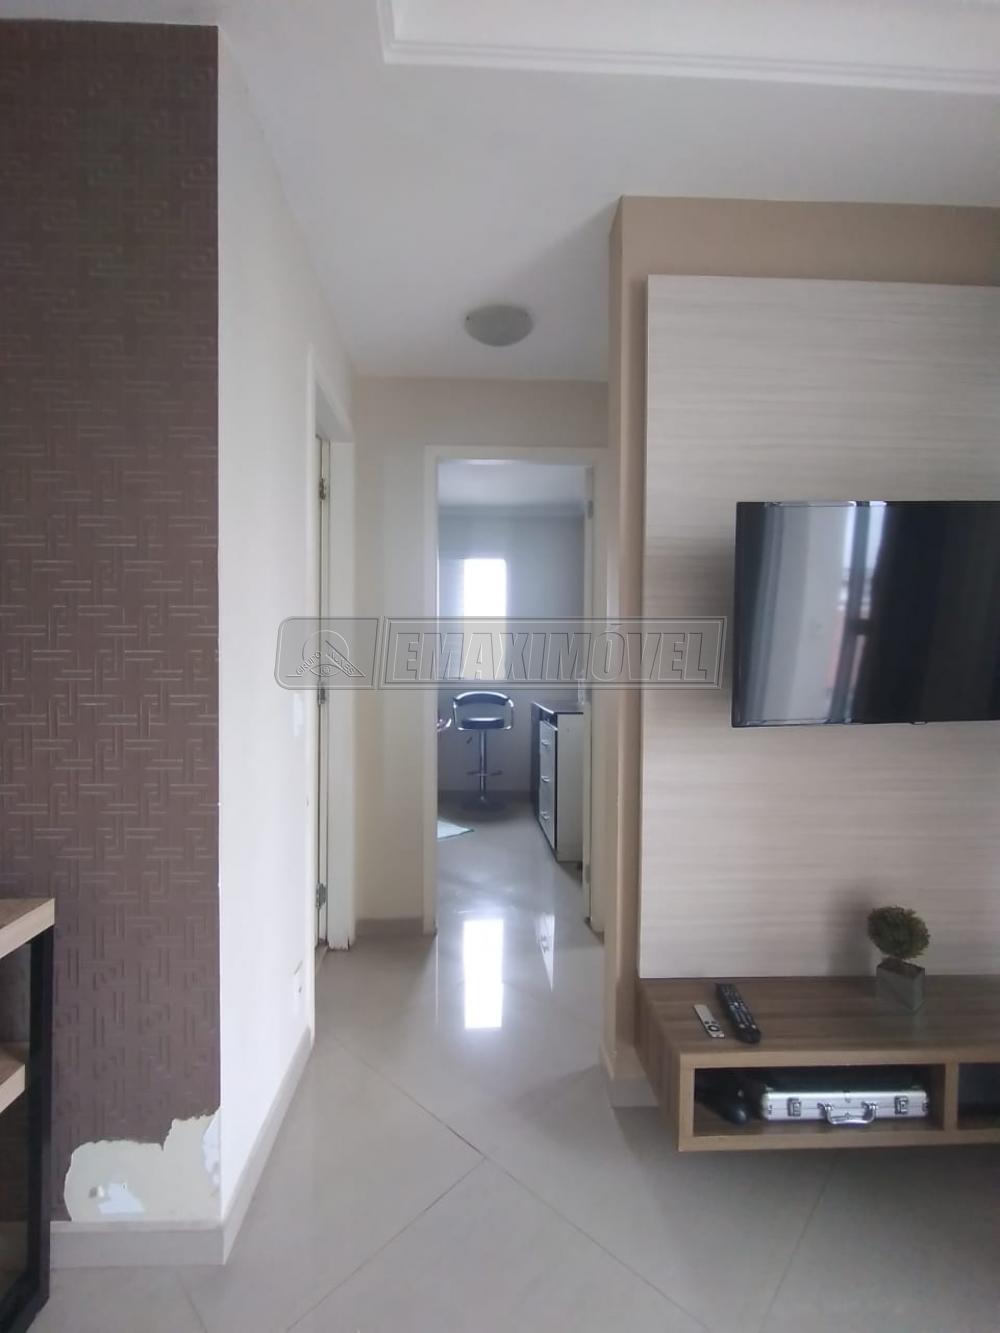 Comprar Apartamento / Padrão em Sorocaba R$ 290.000,00 - Foto 4